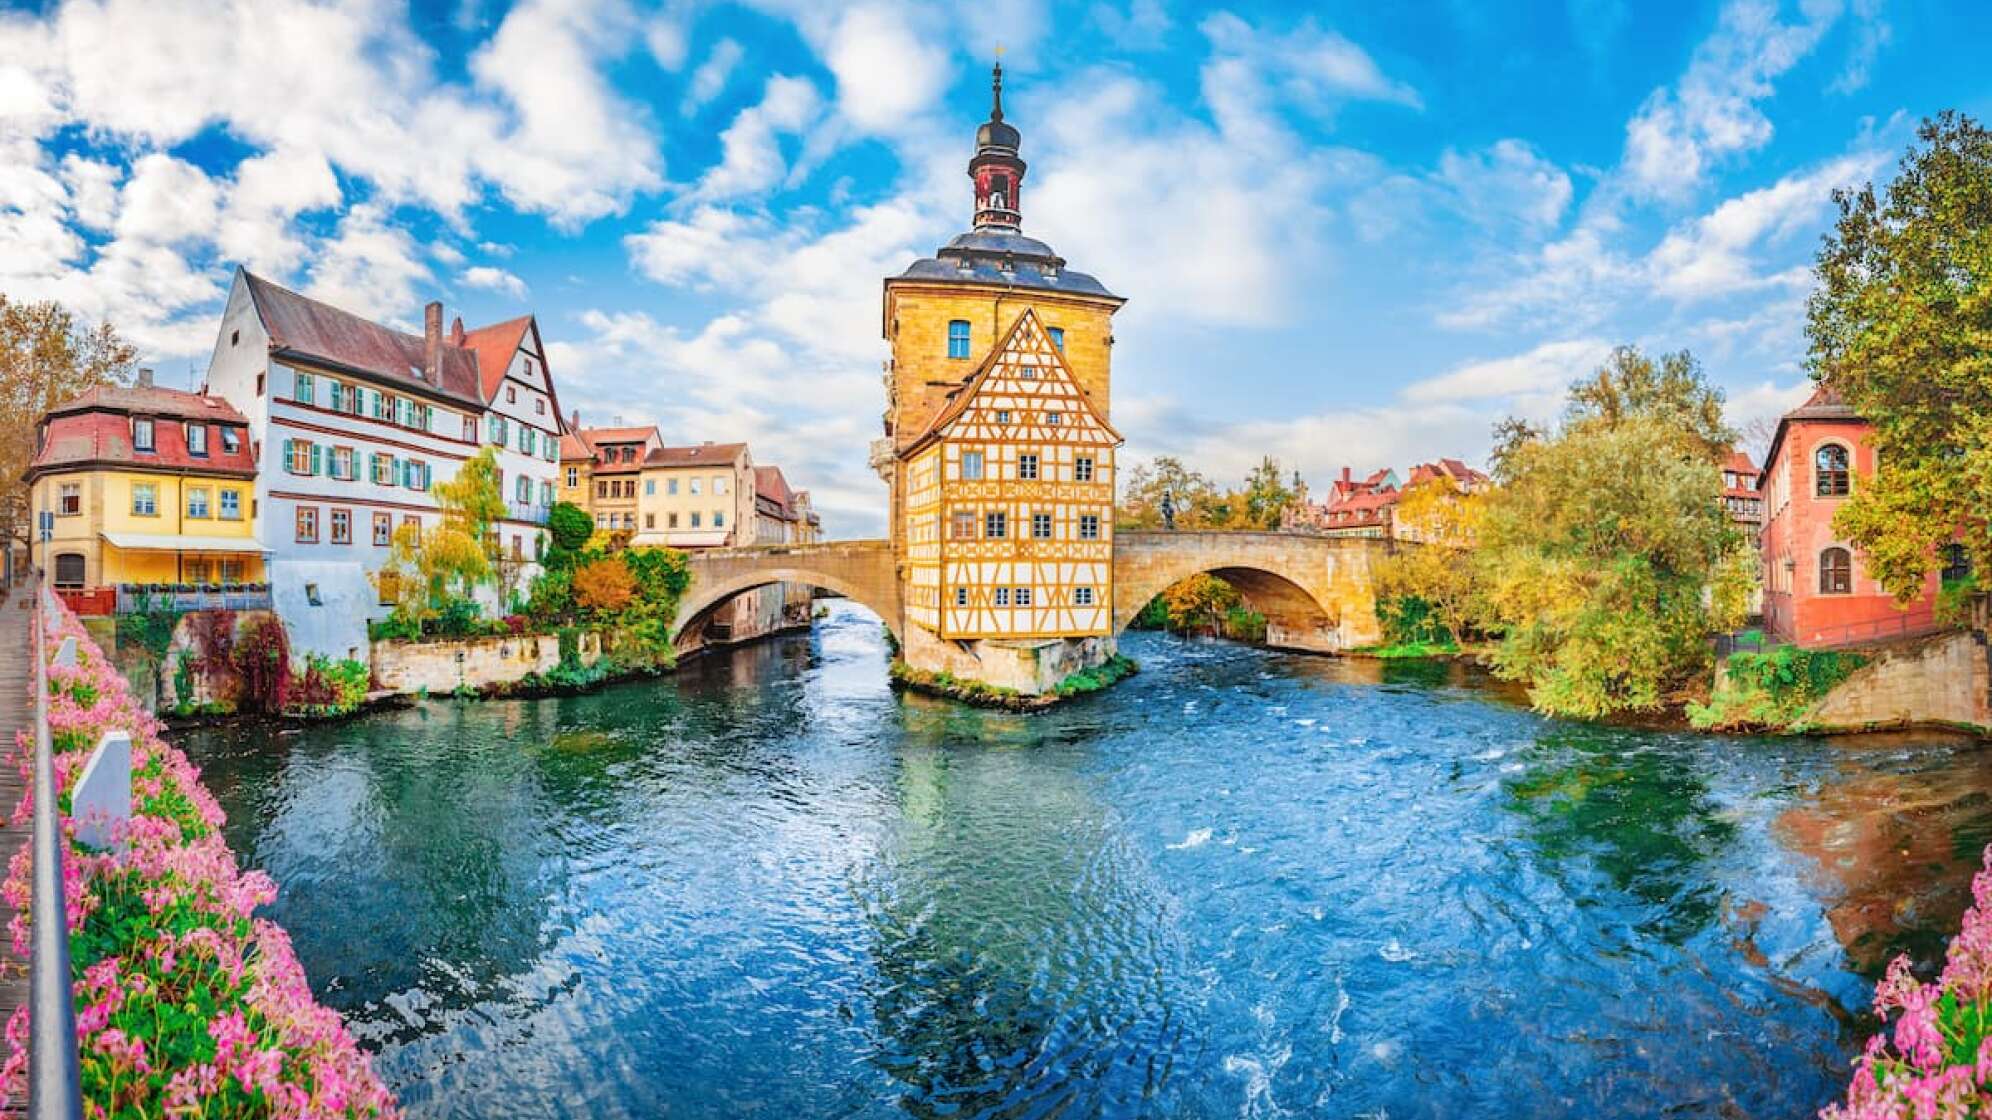 Bamberg ist perfekt für genussvolles Durch-die-Stadt-streifen